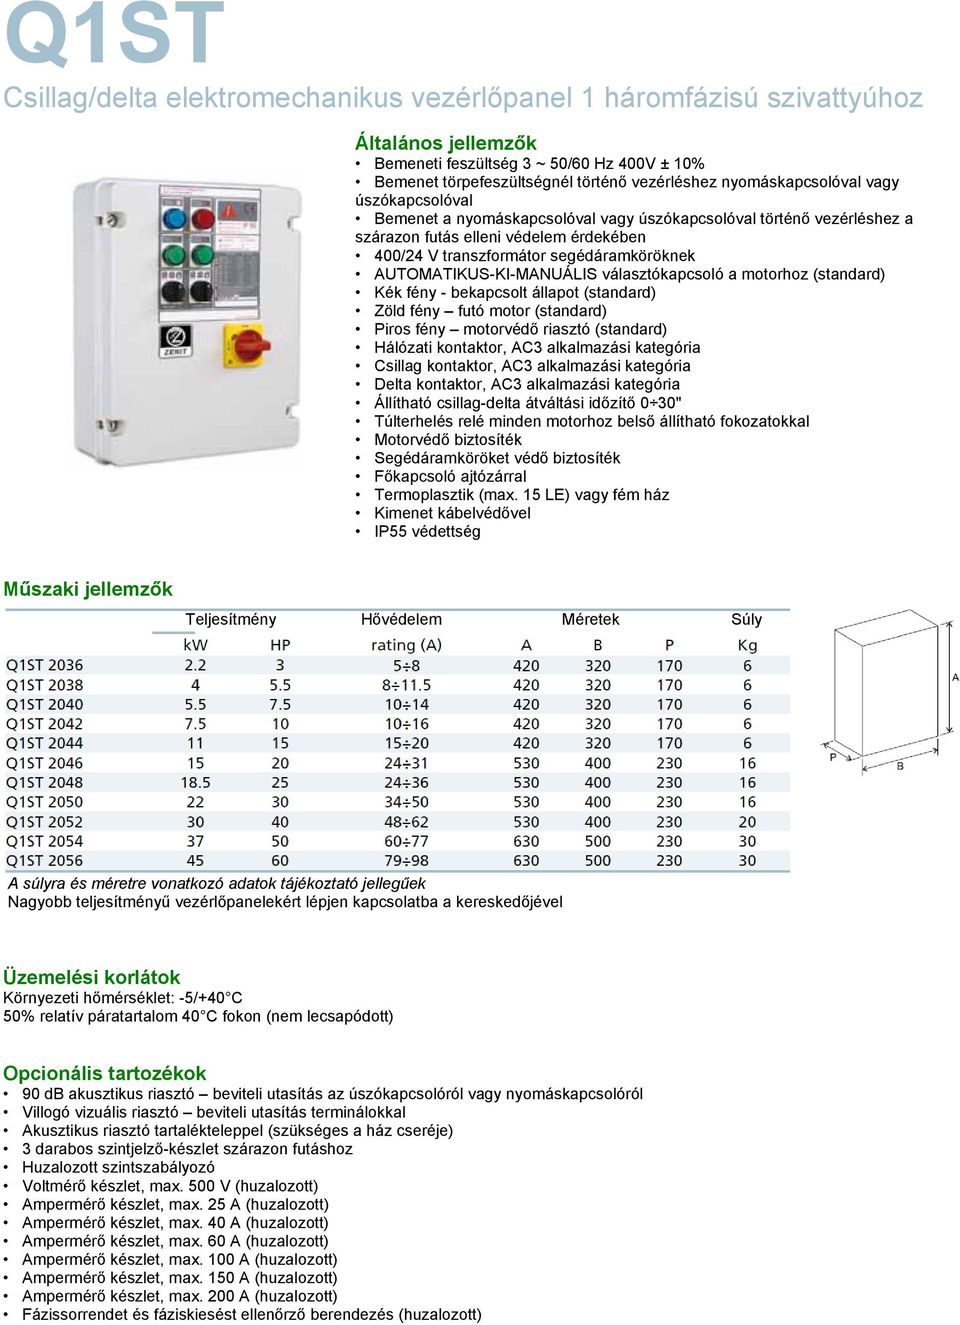 Zöld fény futó motor (standard) Piros fény motorvédő riasztó (standard) Hálózati kontaktor, AC3 alkalmazási kategória Csillag kontaktor, AC3 alkalmazási kategória Delta kontaktor, AC3 alkalmazási